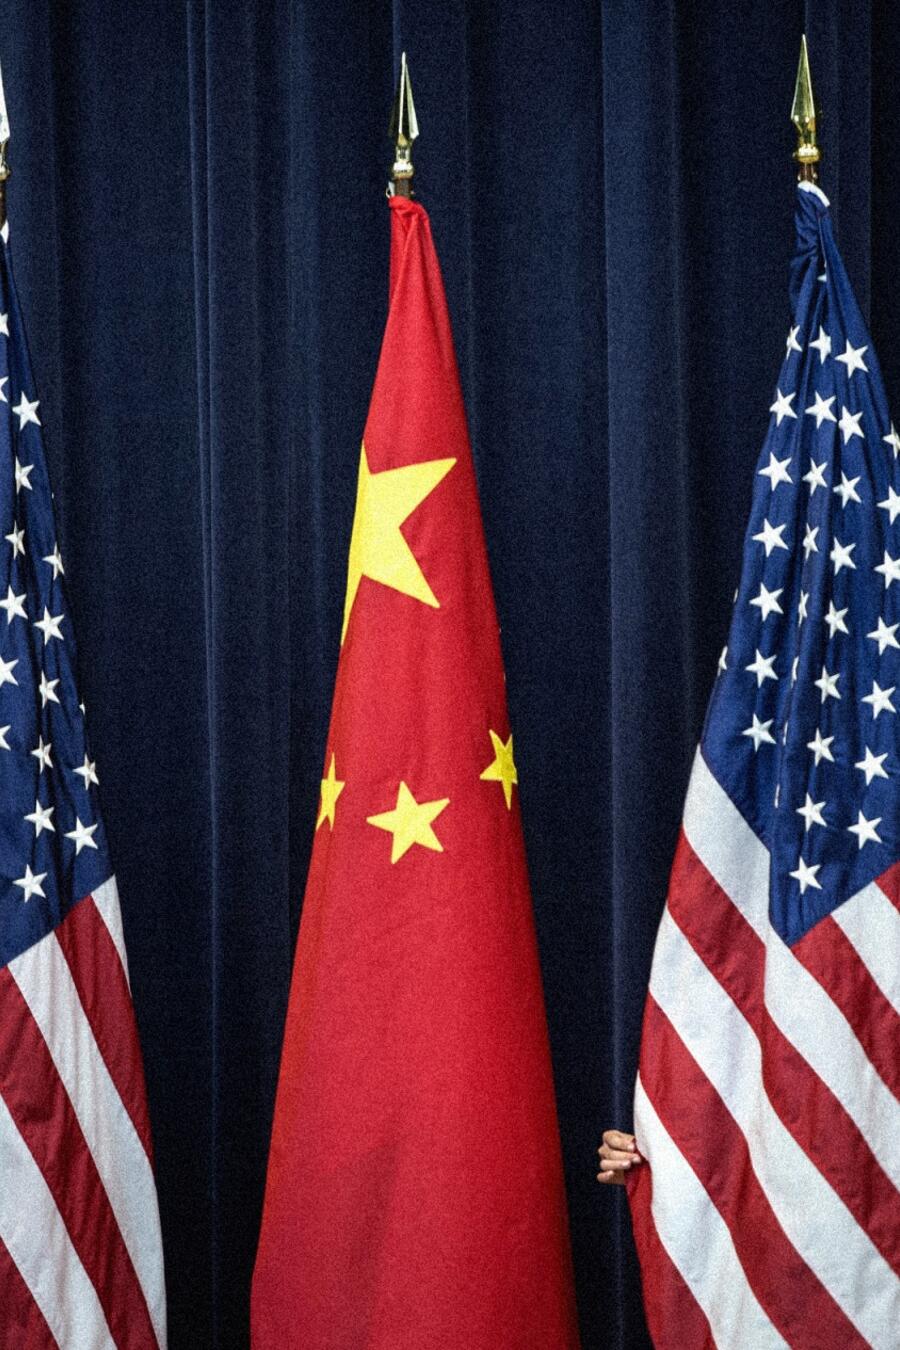 Un funcionario arreglaba una bandera estadounidense antes de una reunión del Diálogo Estratégico y Económico de Estados Unidos y China, en Washington, en 2013.